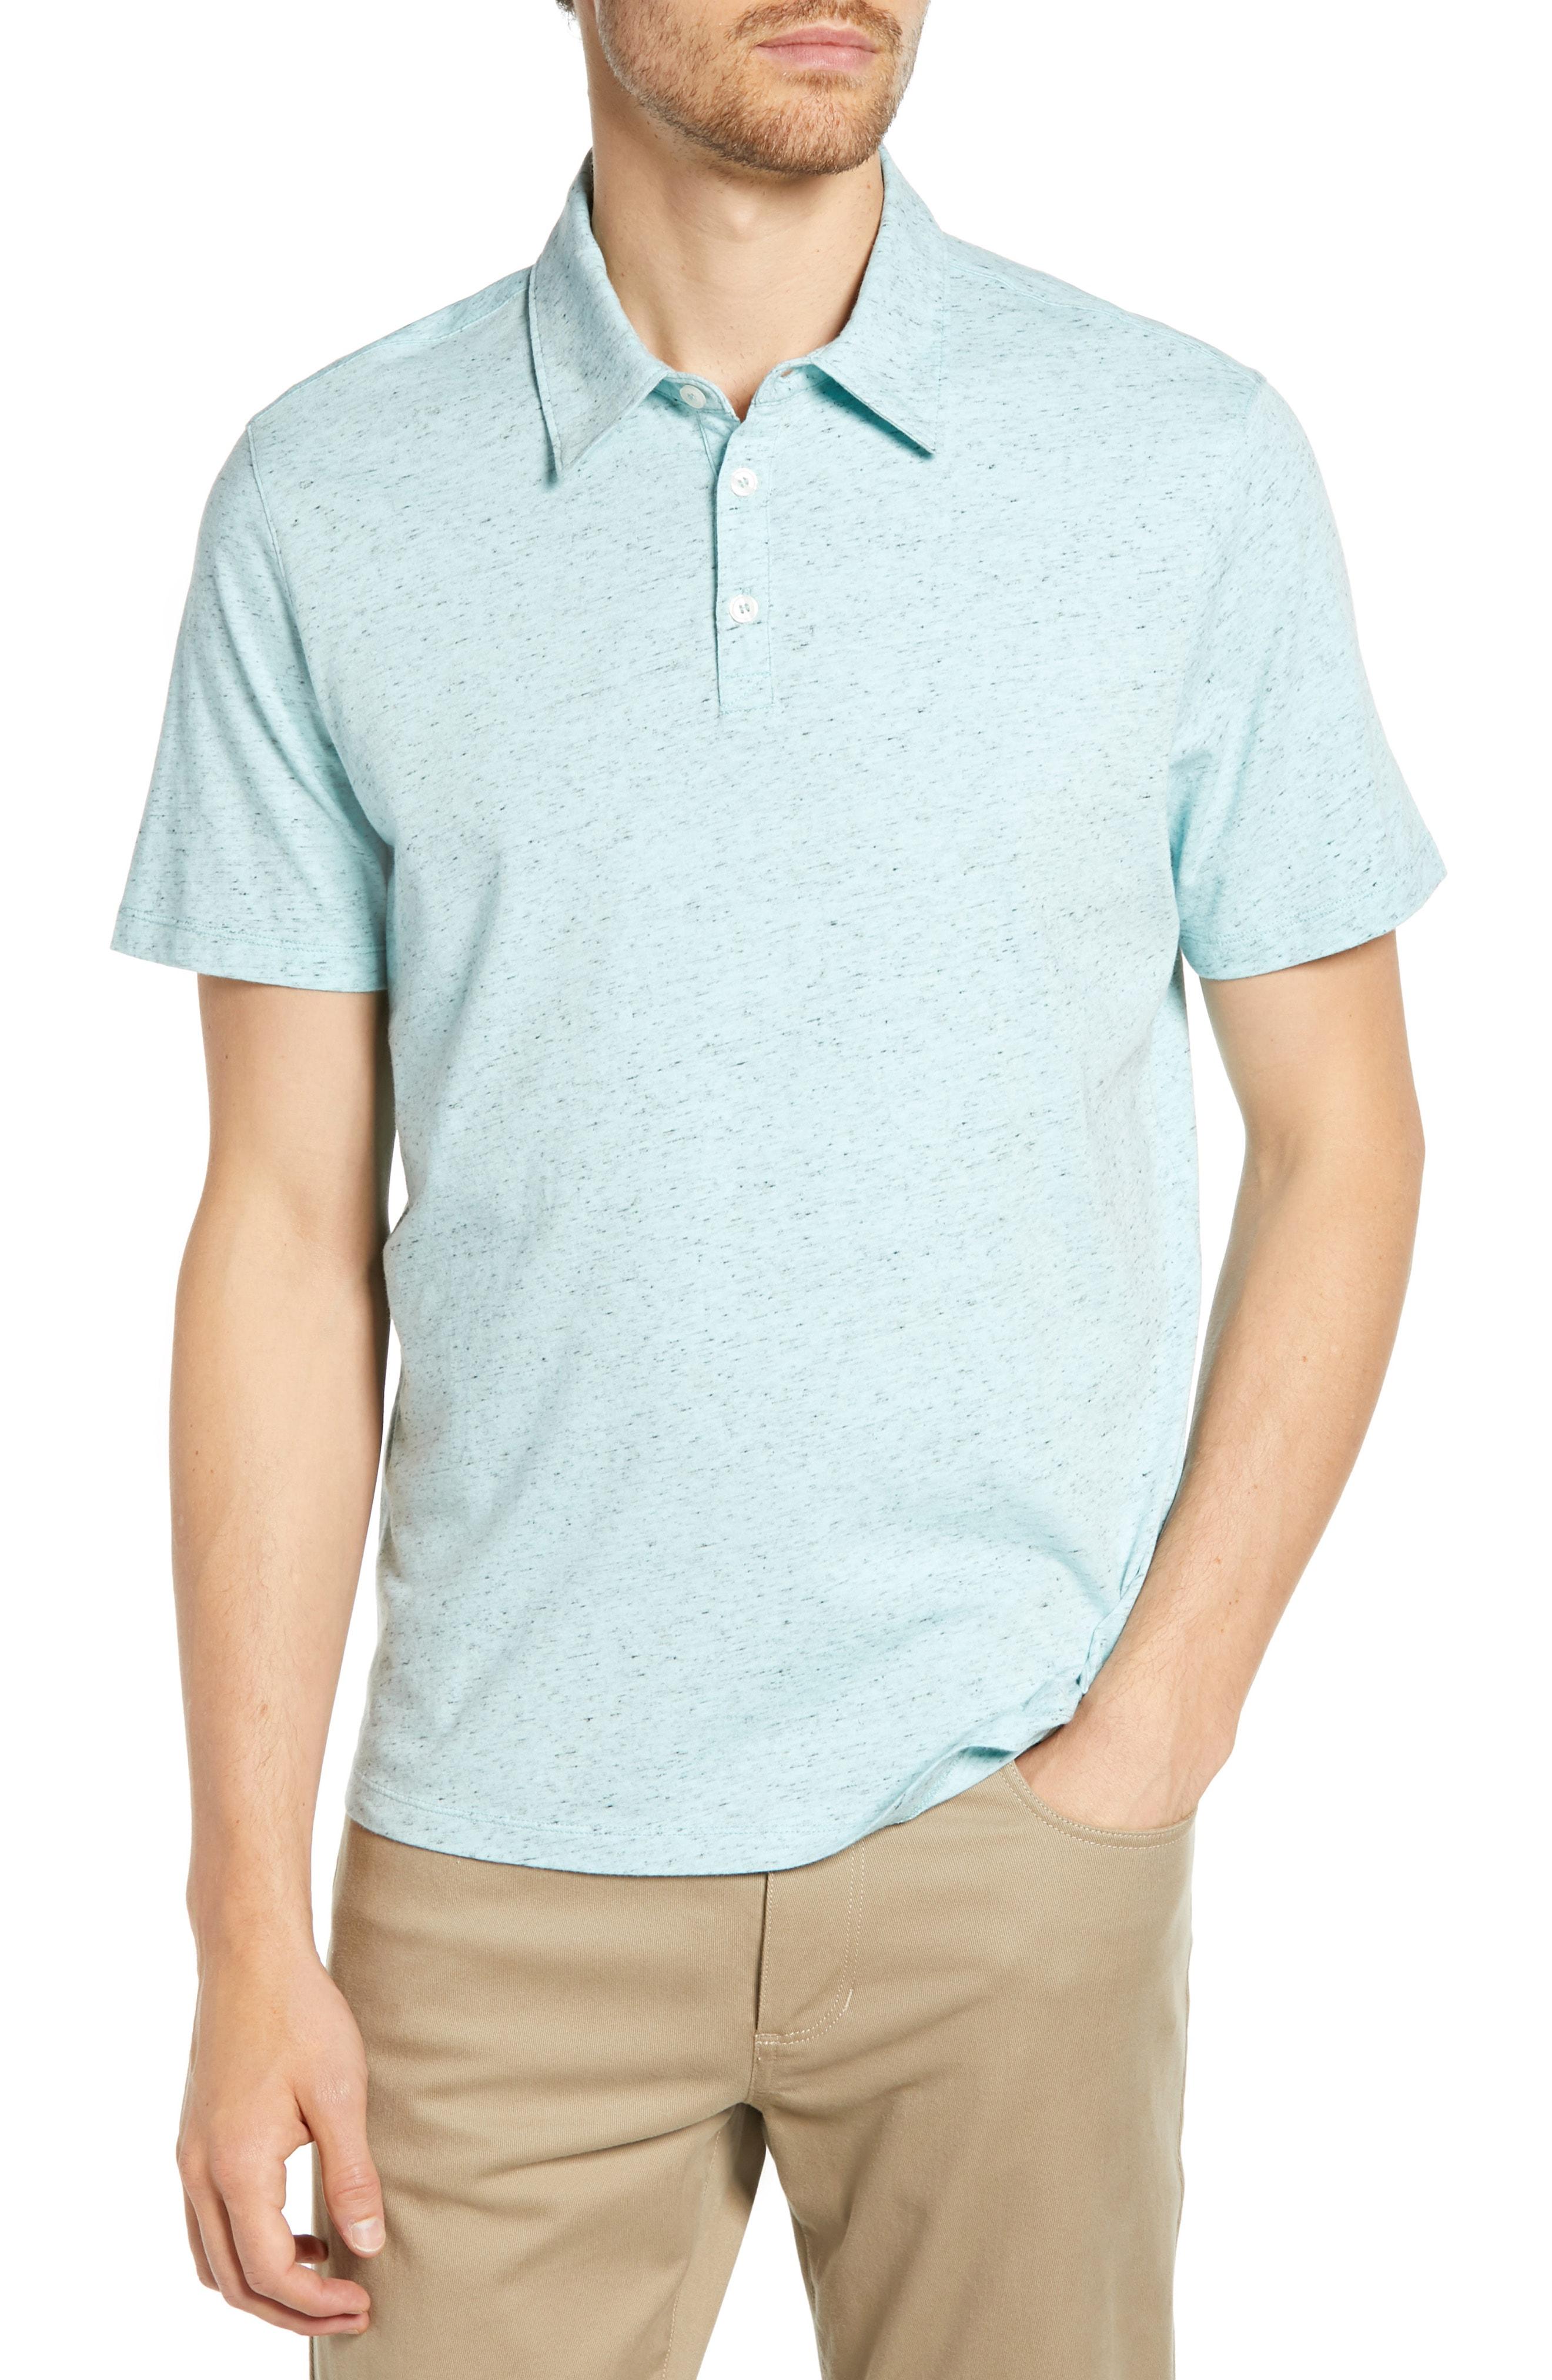 Lyst - Zachary Prell Cadler Regular Fit Polo Shirt in Blue for Men